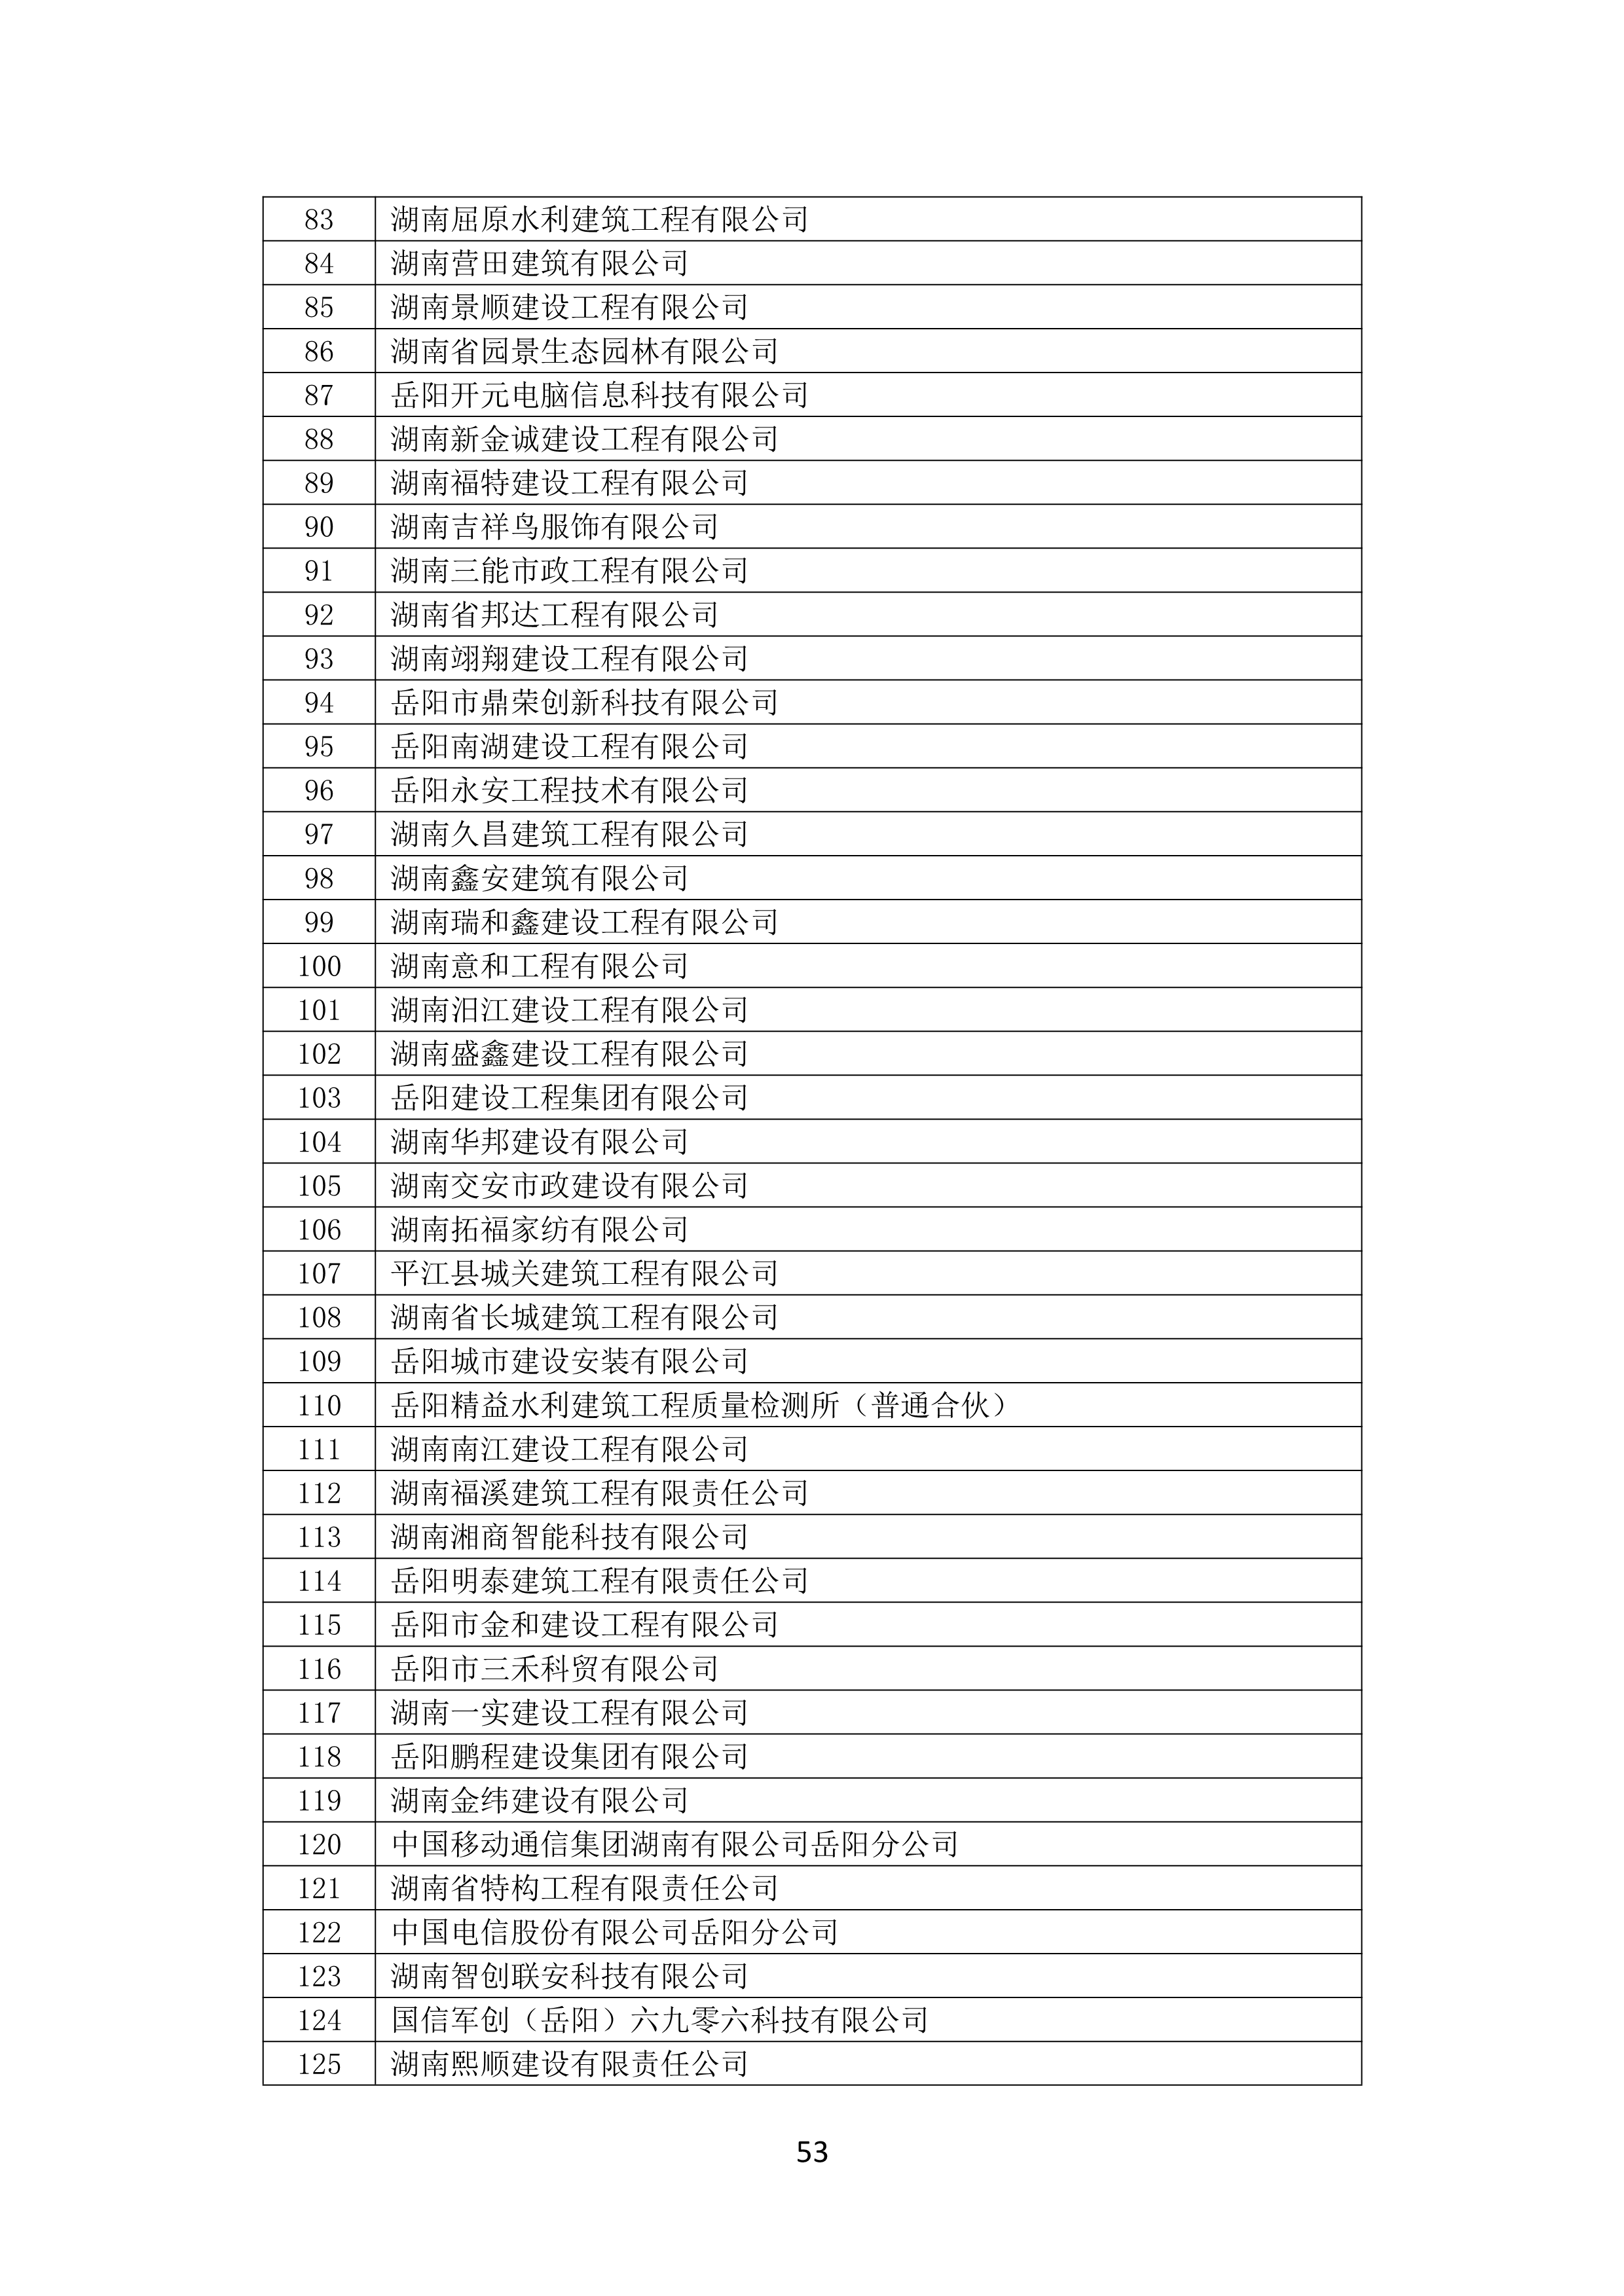 2021 年(nián)度湖南省守合同重信用企業名單_54.png